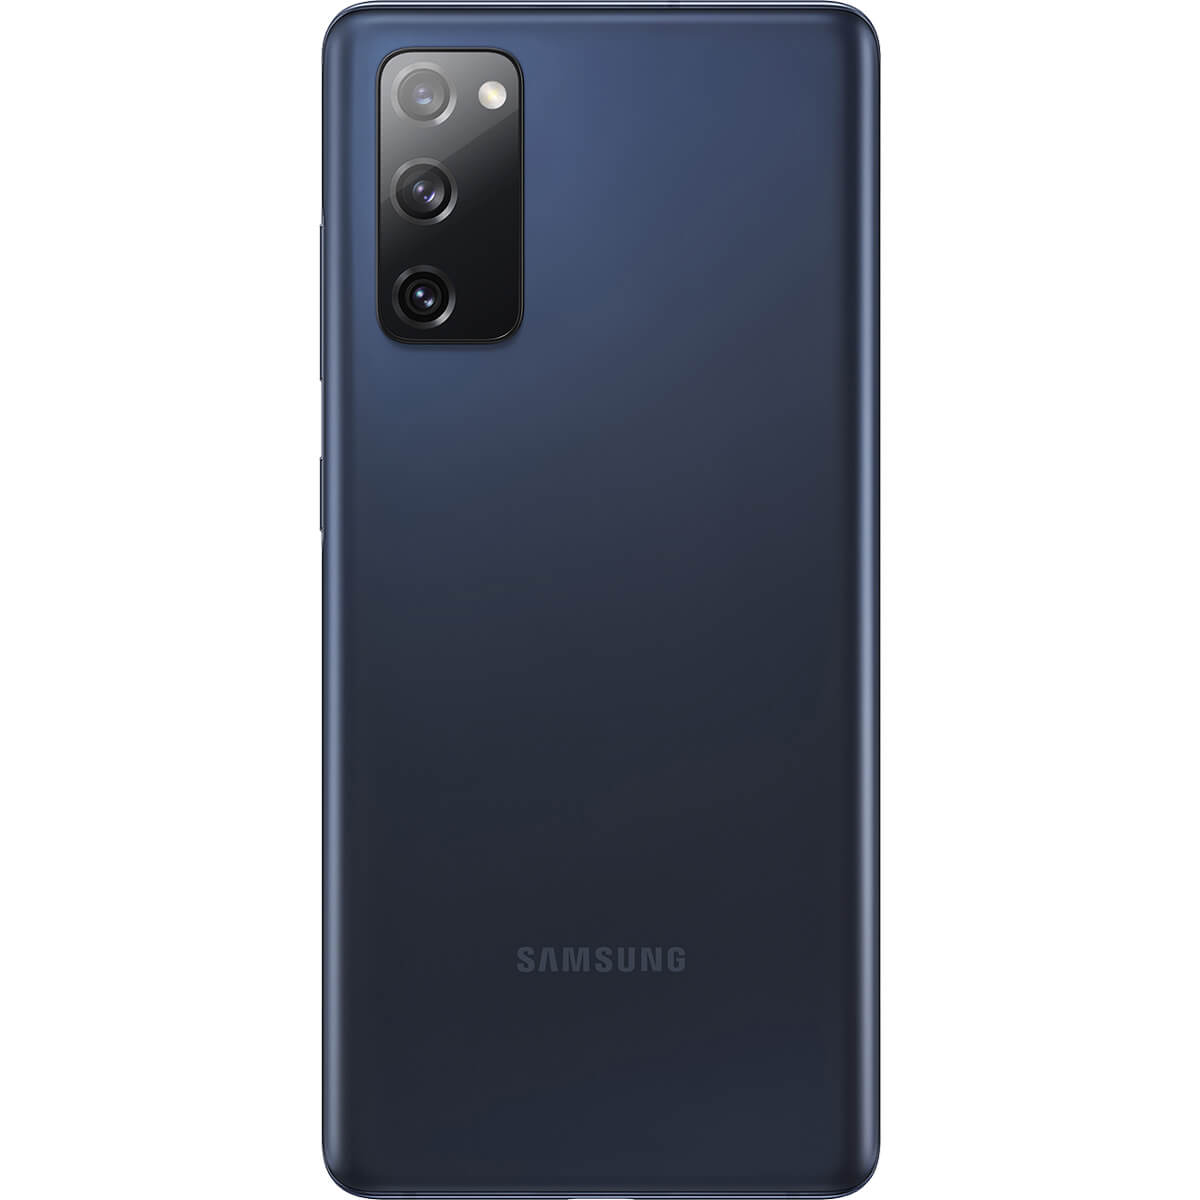 گوشی موبایل سامسونگ Galaxy S20 FE ظرفیت 128 گیگابایت و رم 8 گیگابایت